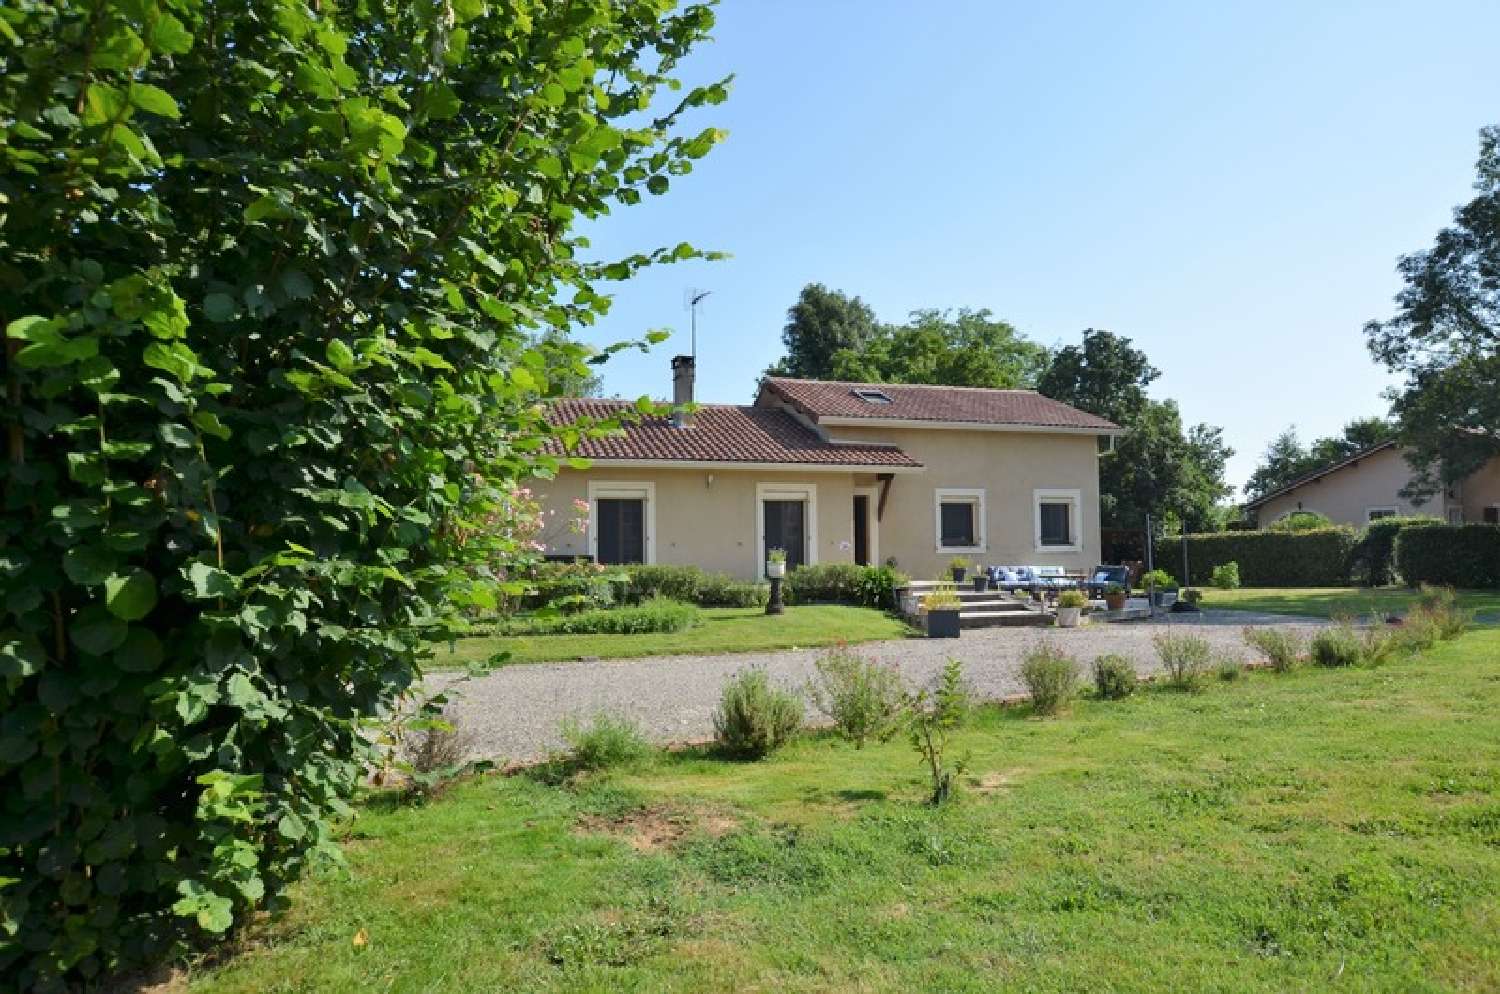  à vendre maison Plaisance Dordogne 2